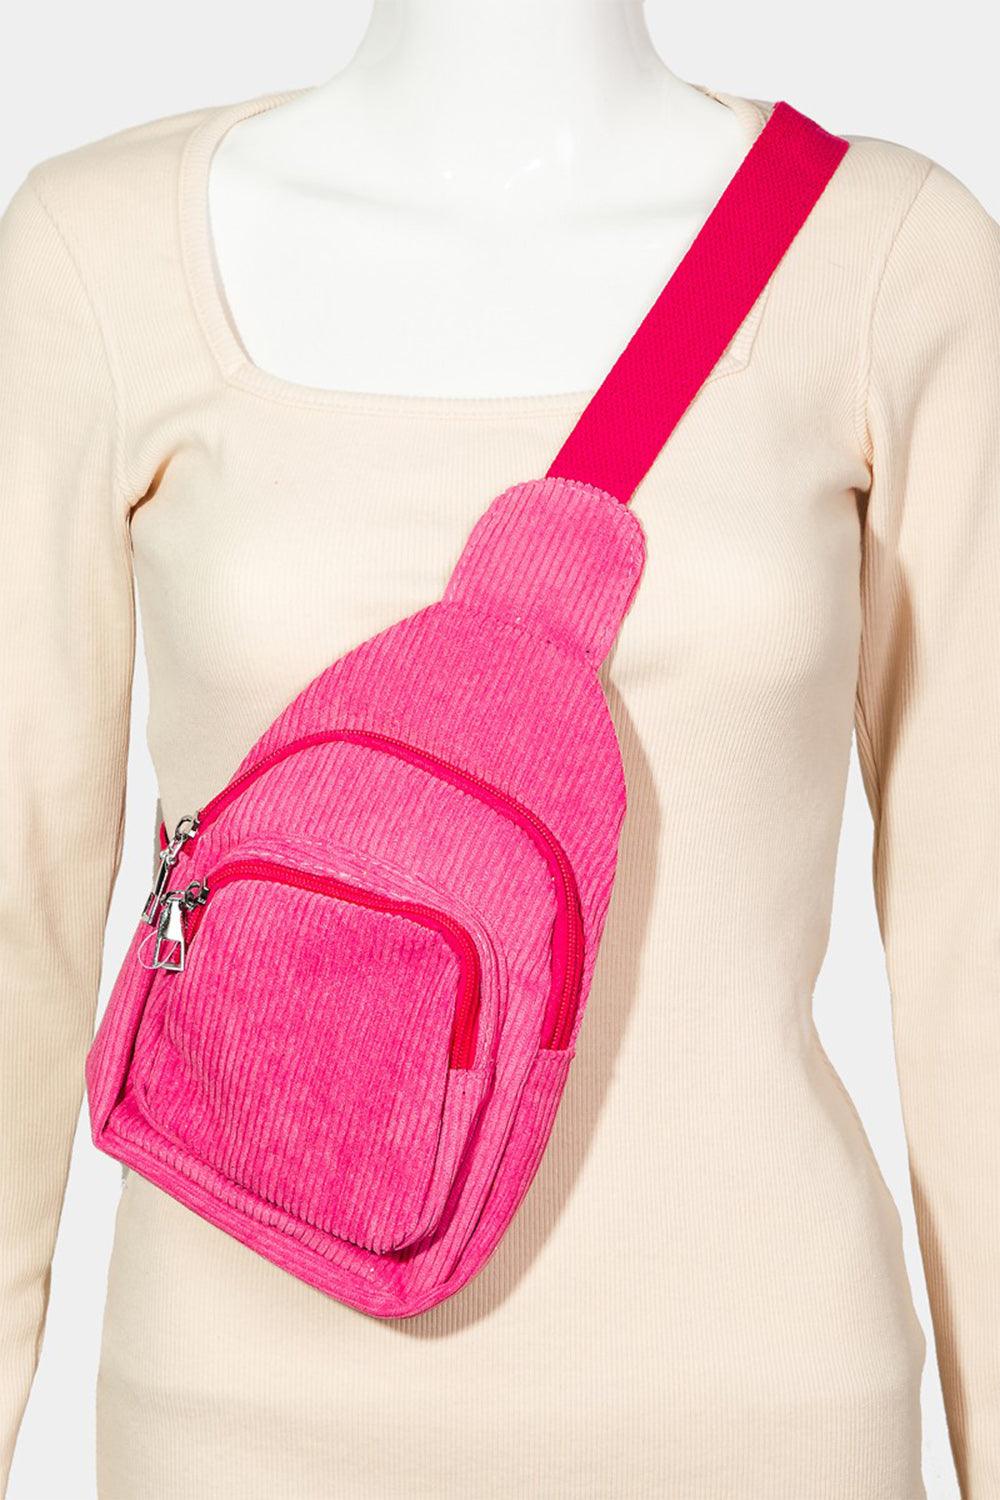 Fame Double-Layered Sling Bag Handbags